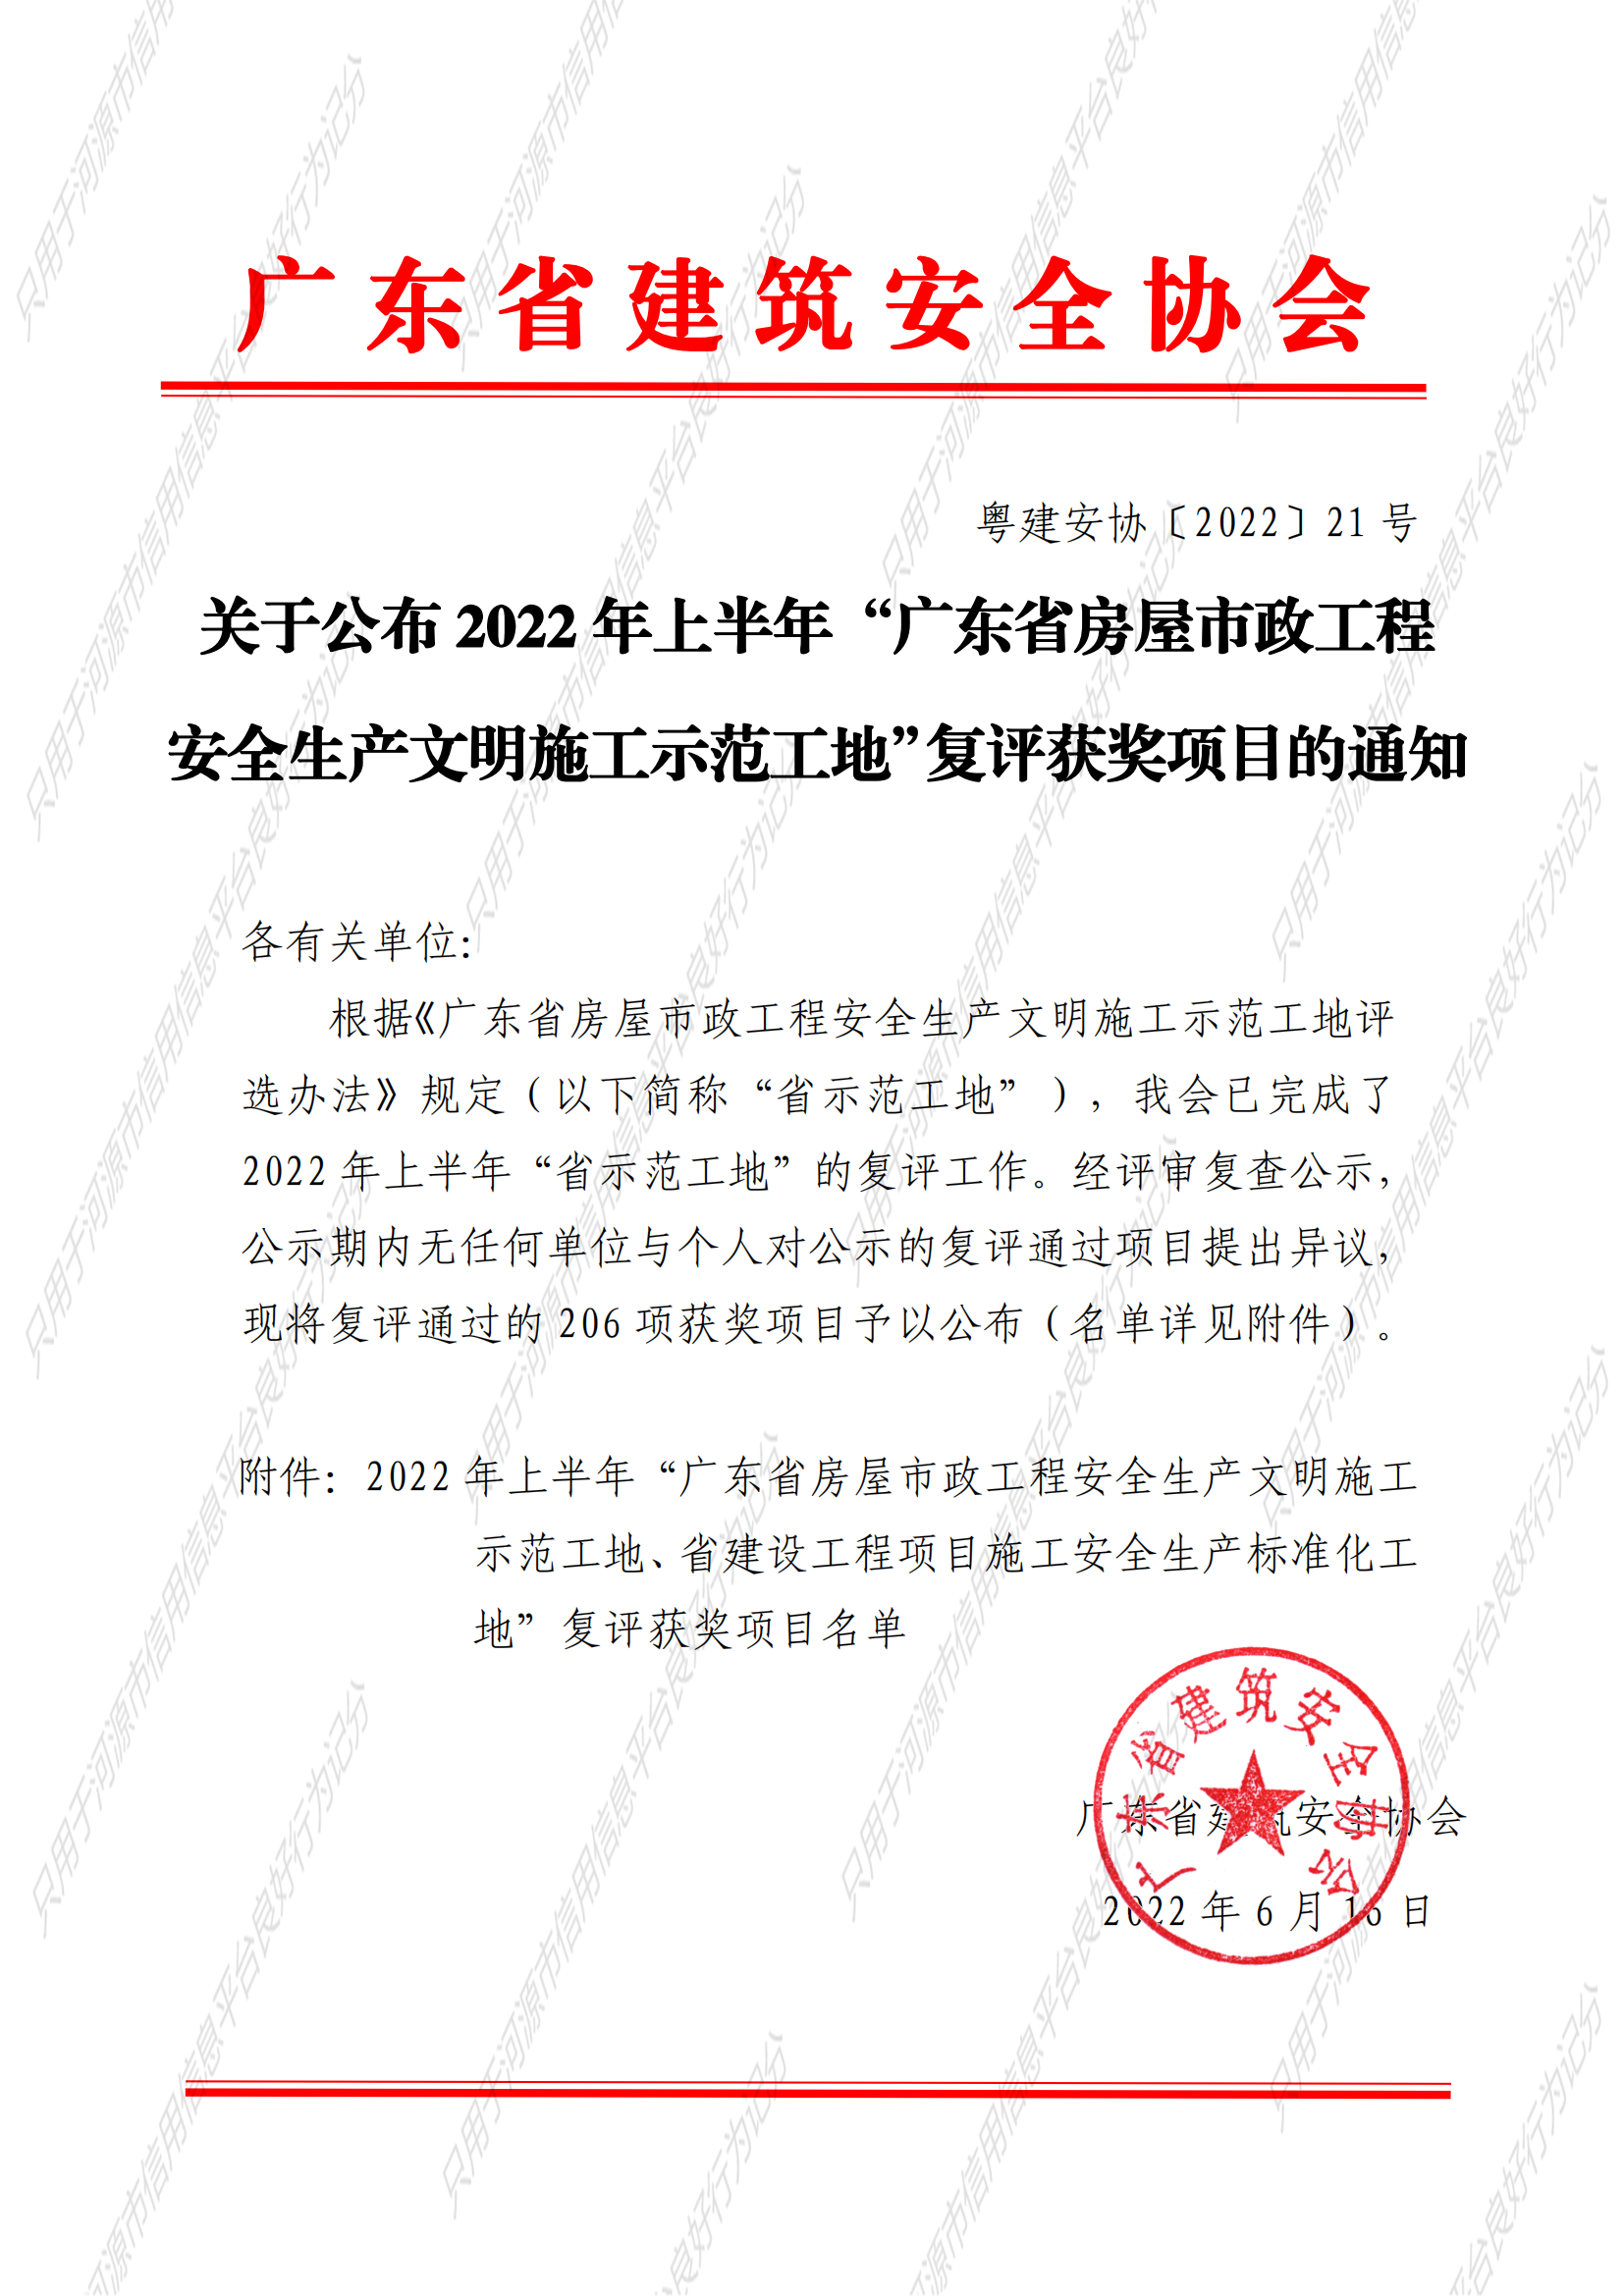 关于公布2022年上半年“广东省房屋市政工程安全生产文明施工示范工地”复评获奖项目的通知